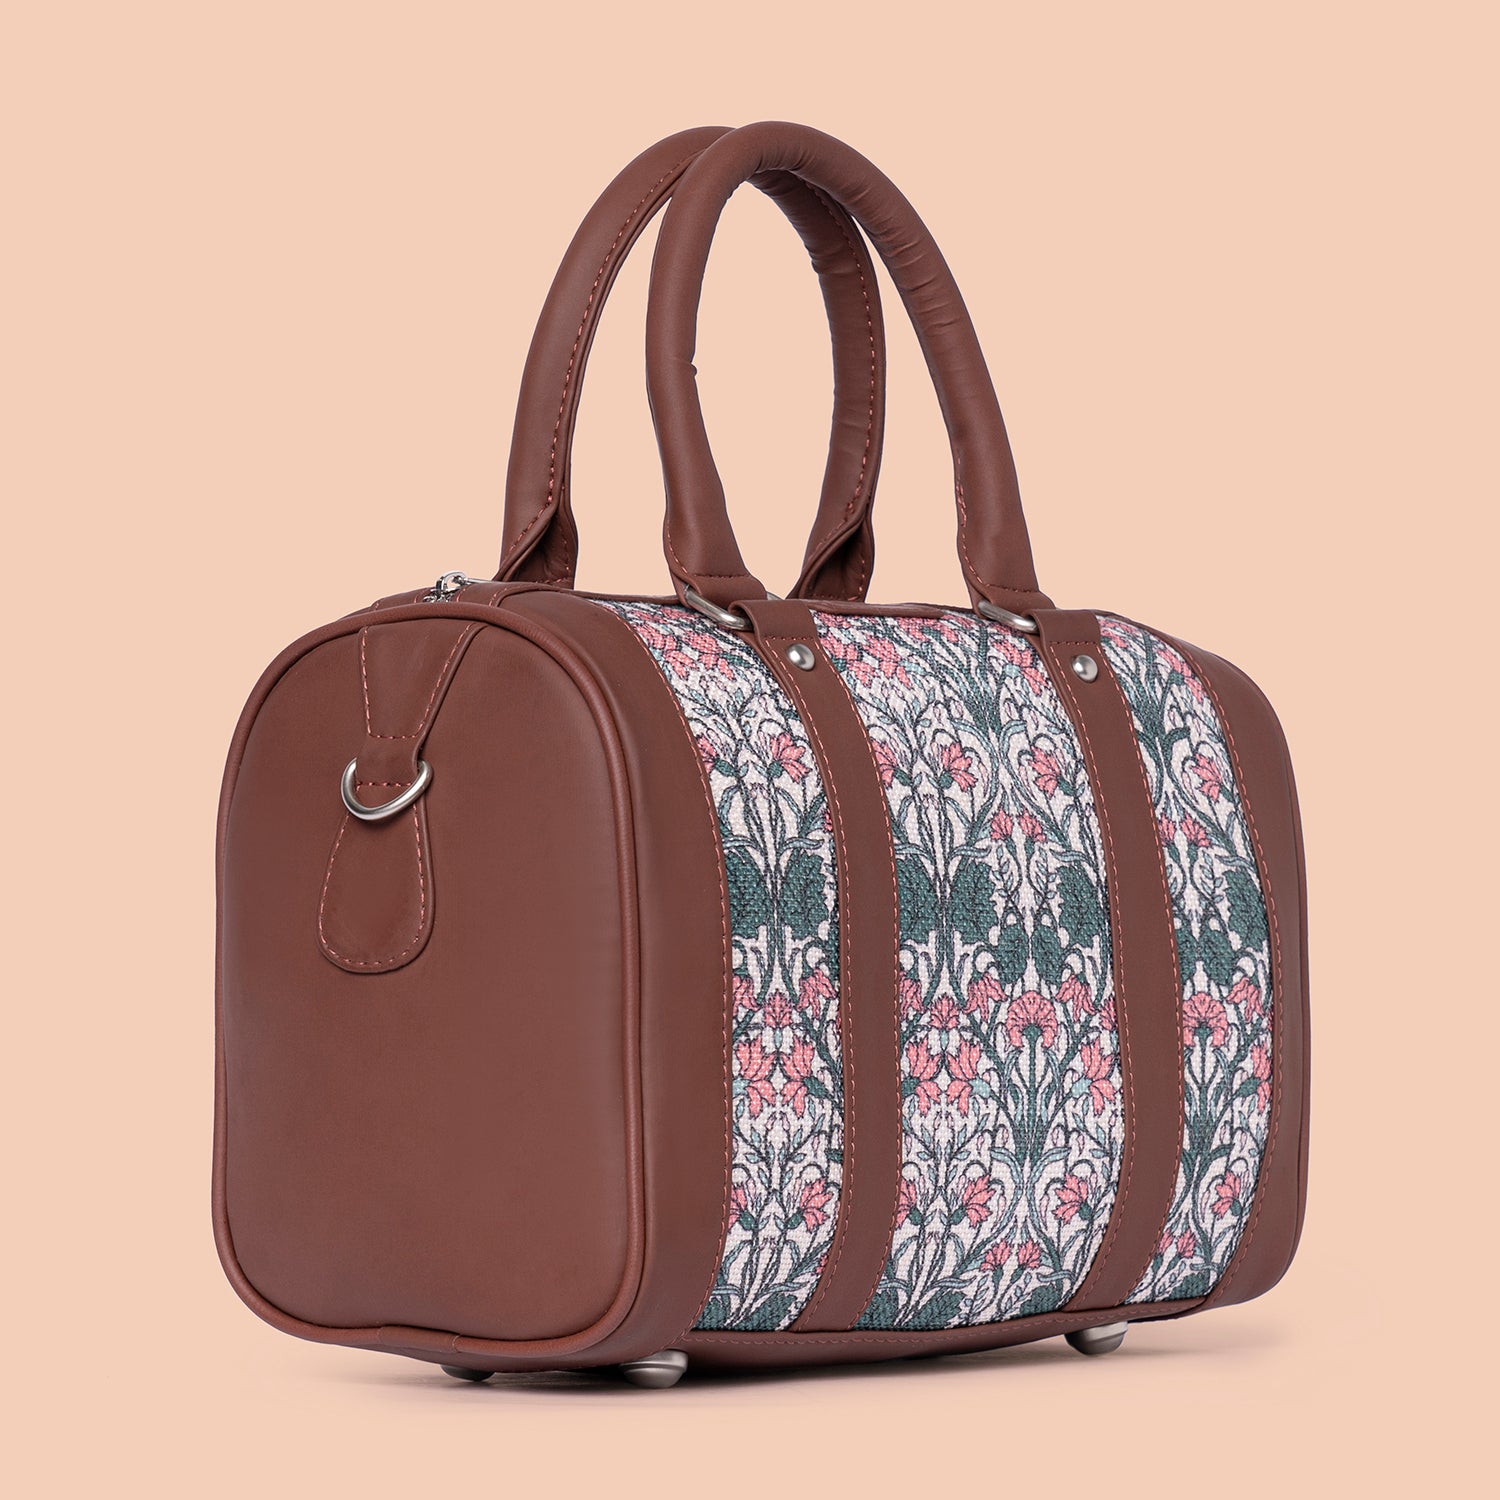 Hooghly Nouveau Handbag